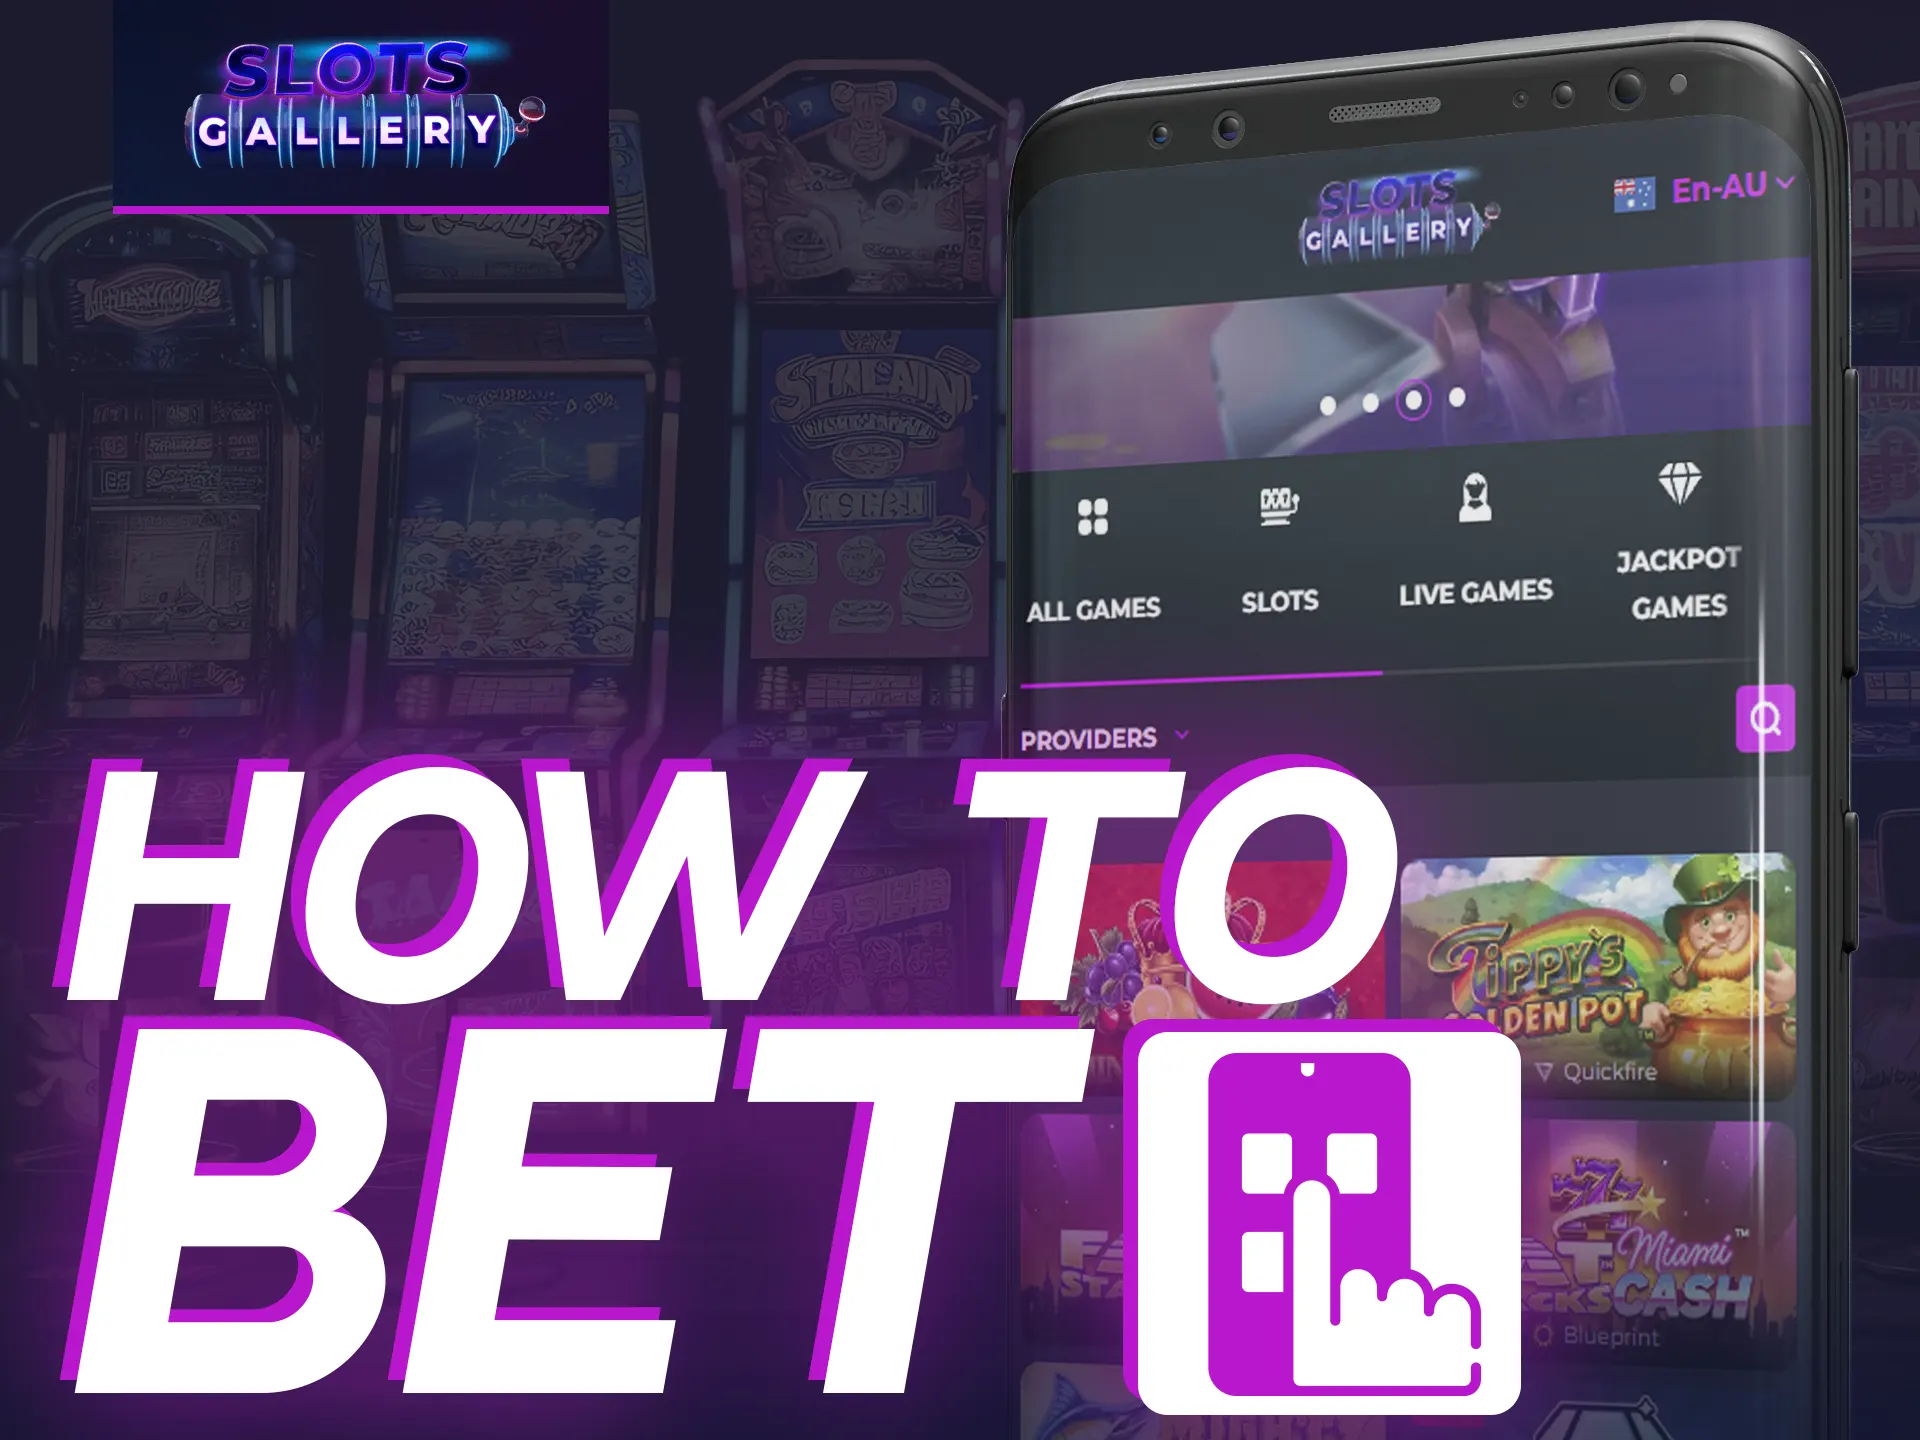 Bet on Slots Gallery app - log in, deposit, start playing.